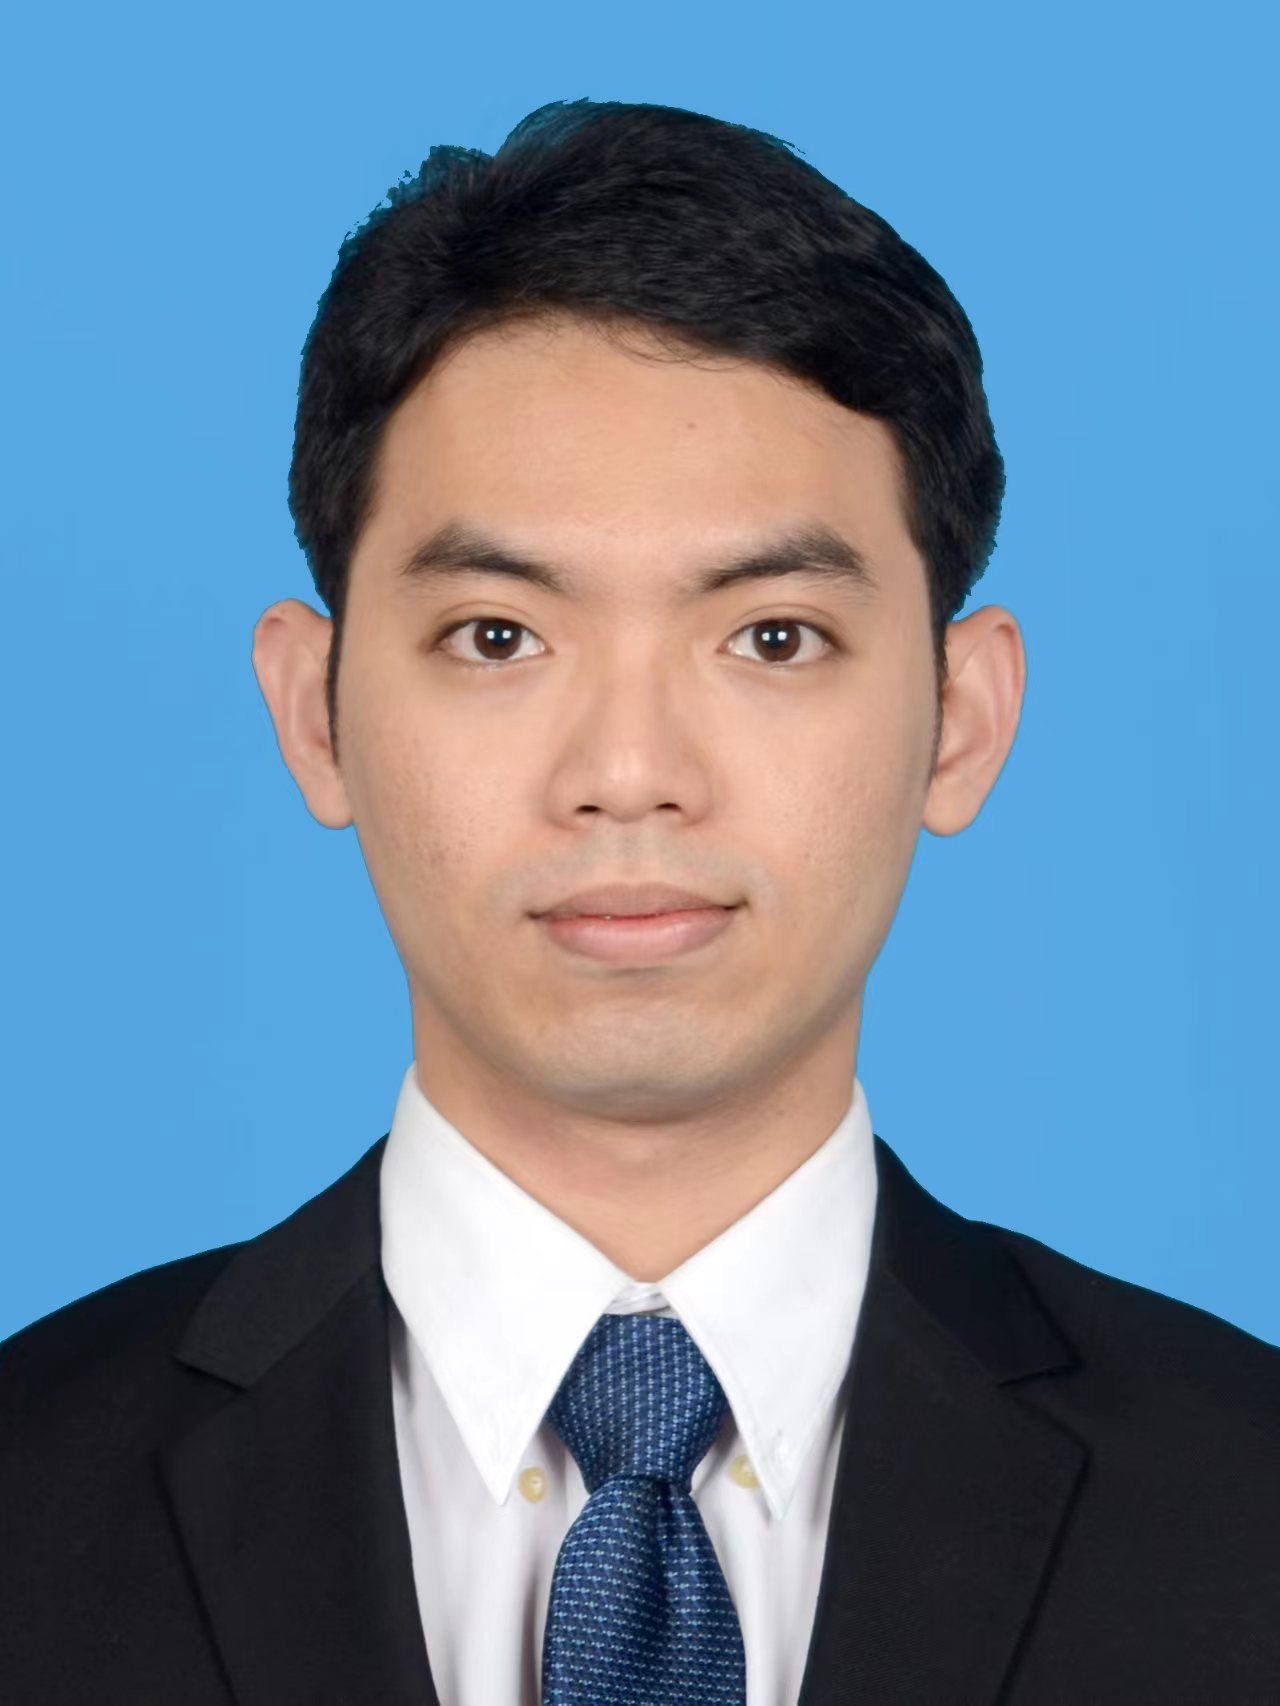 Mr. Liow Zheng Yang